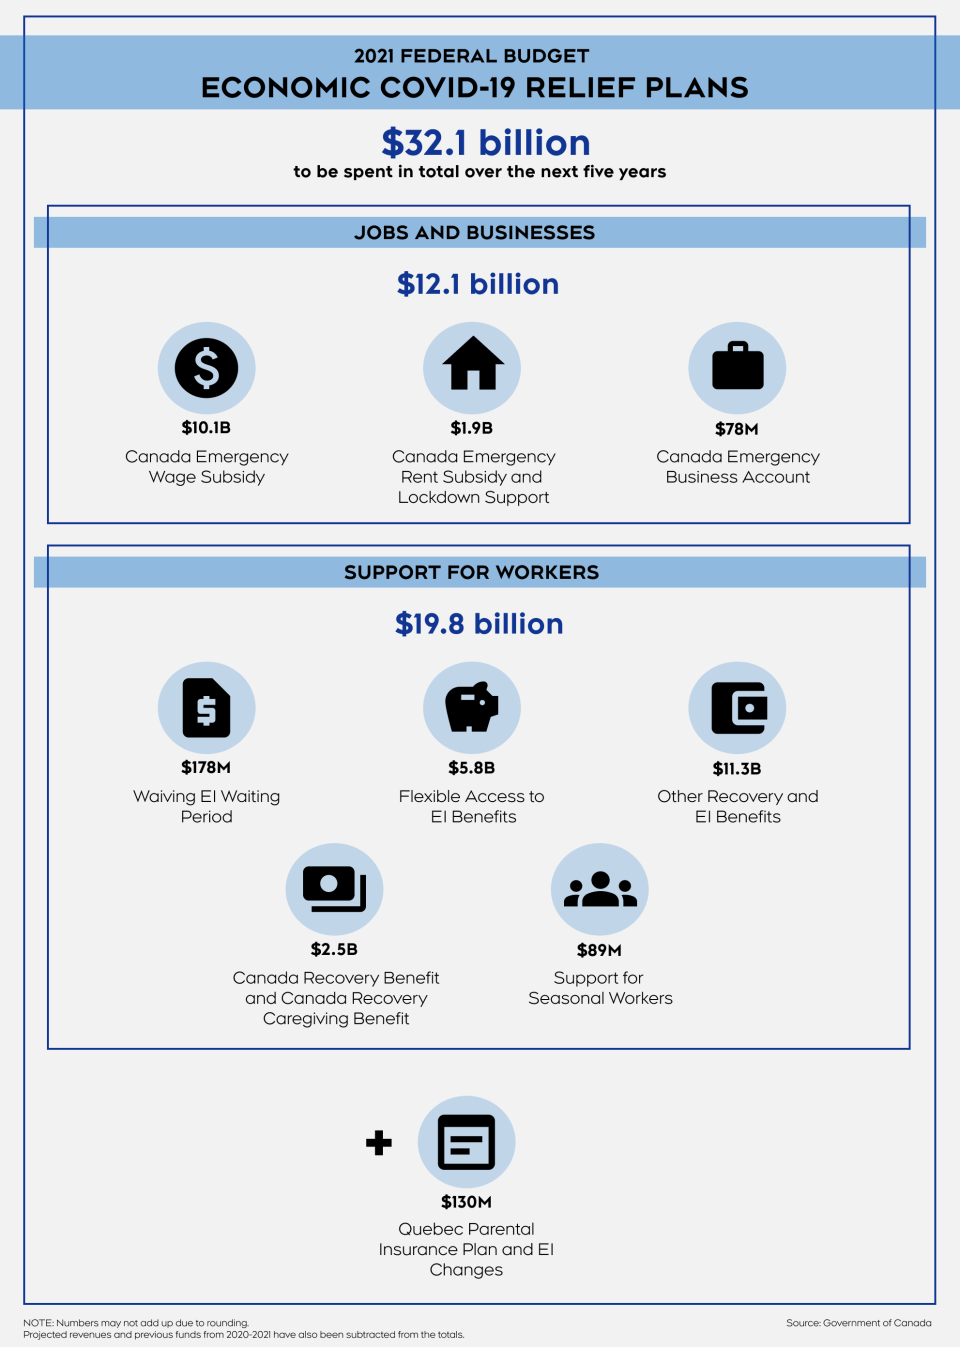 Economic COVID-19 relief plan infographic